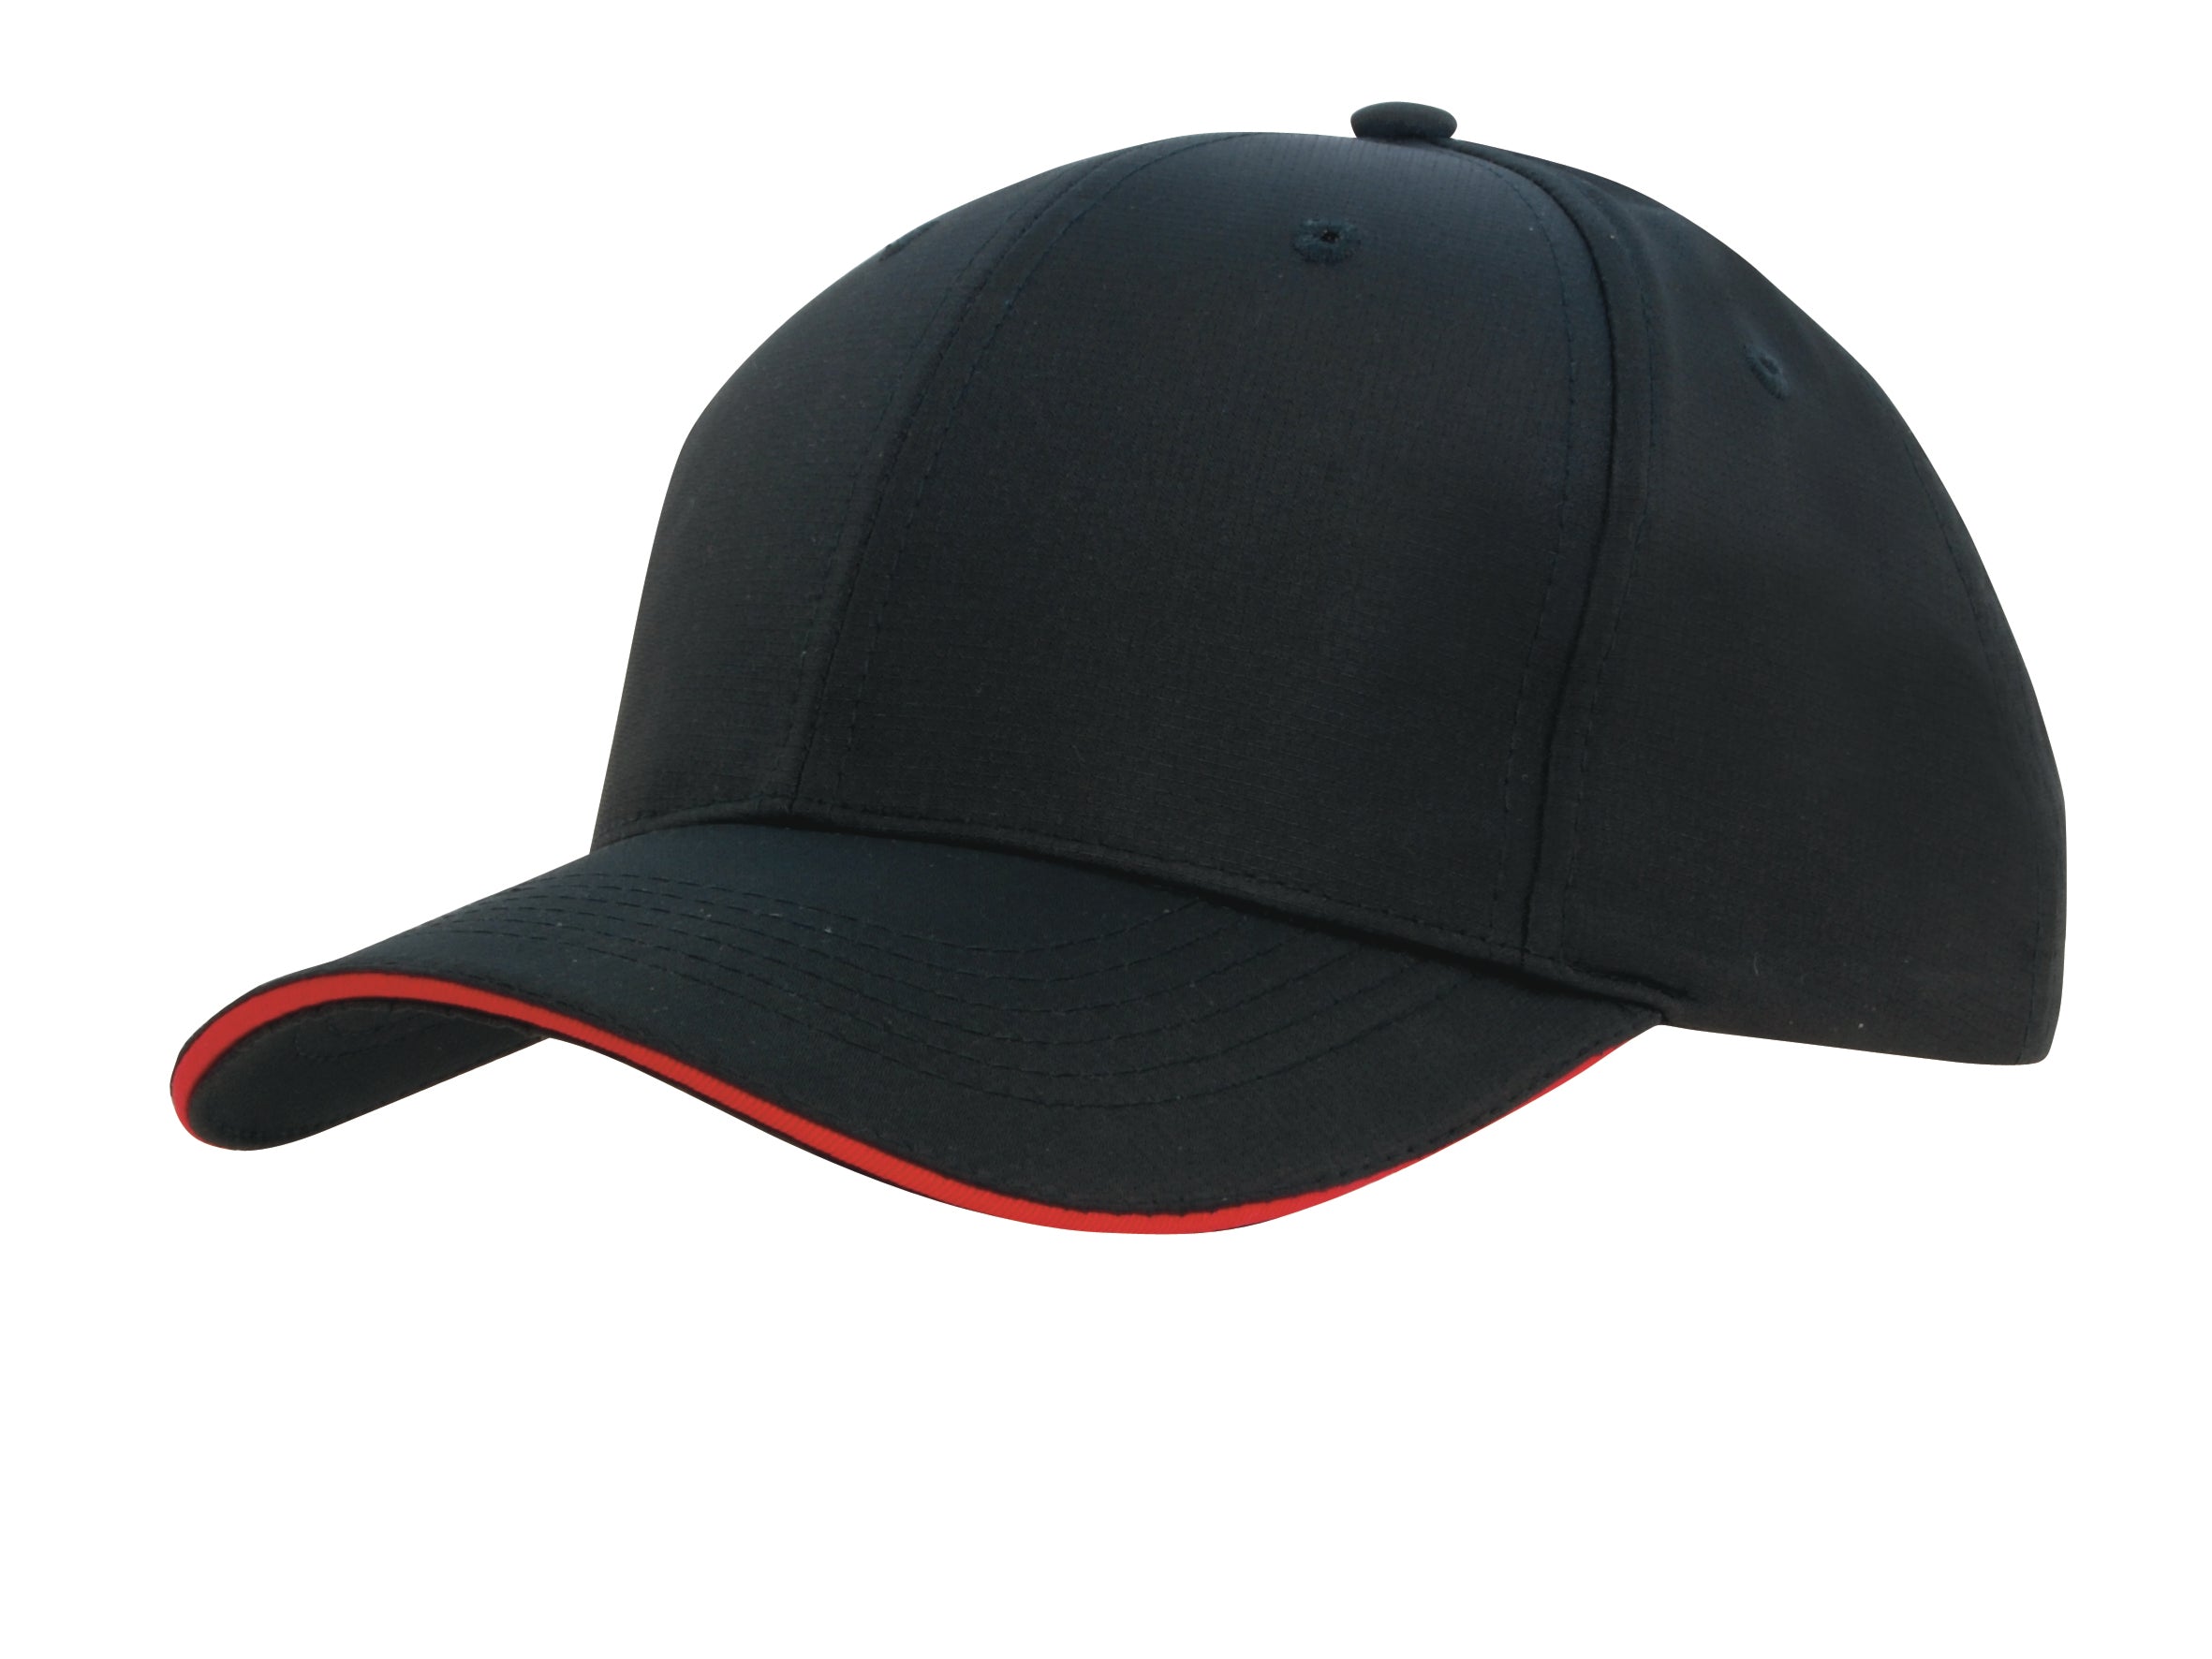 Headwear Sports Ripstop W/sandwich X12 - 4149 Cap Headwear Professionals Black/Red One Size 